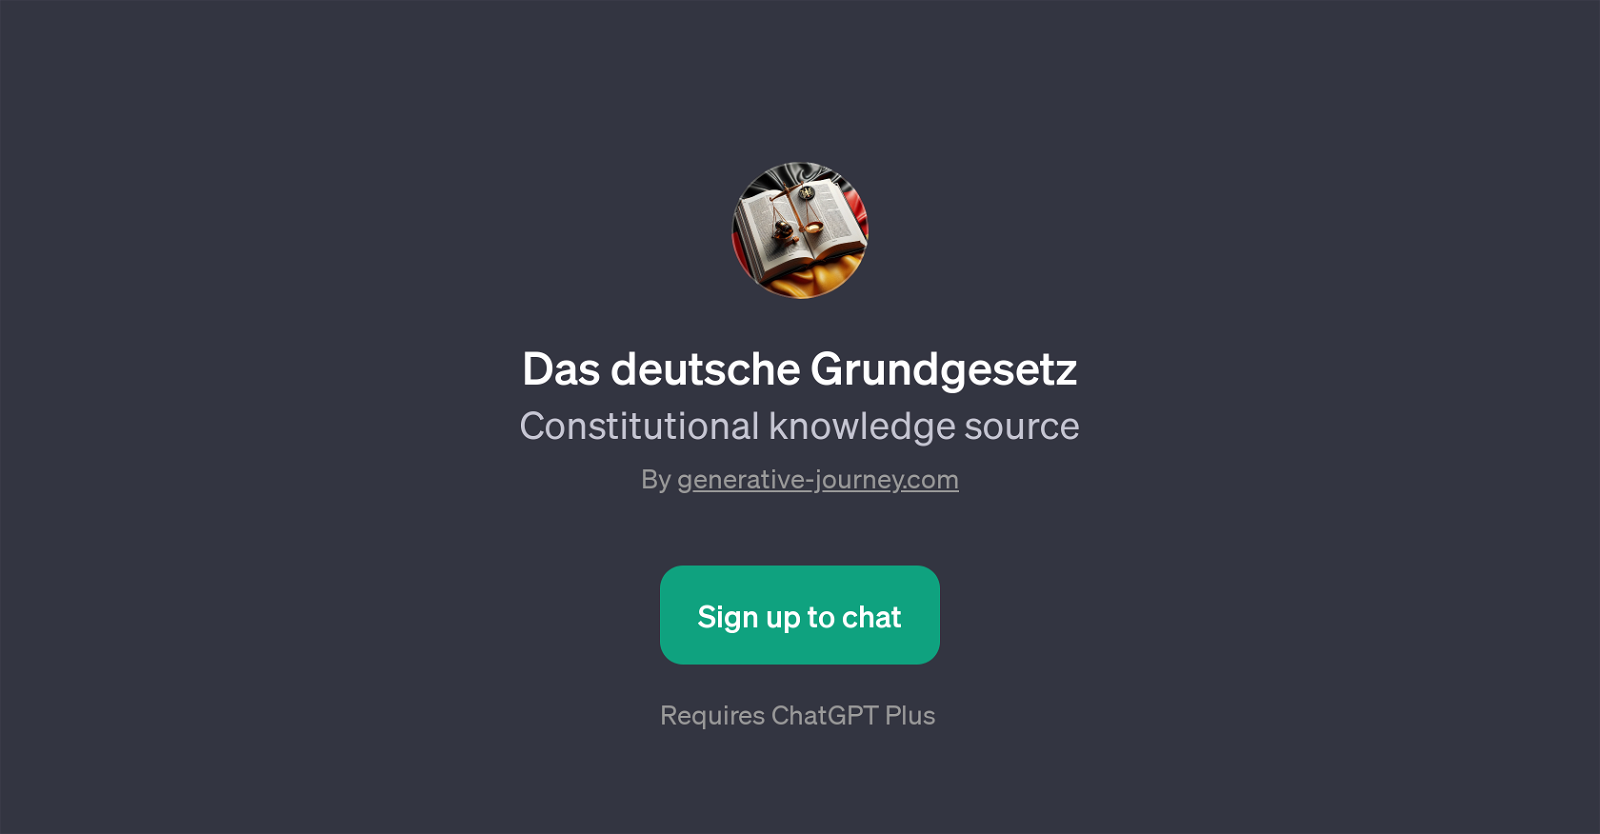 Das deutsche Grundgesetz website